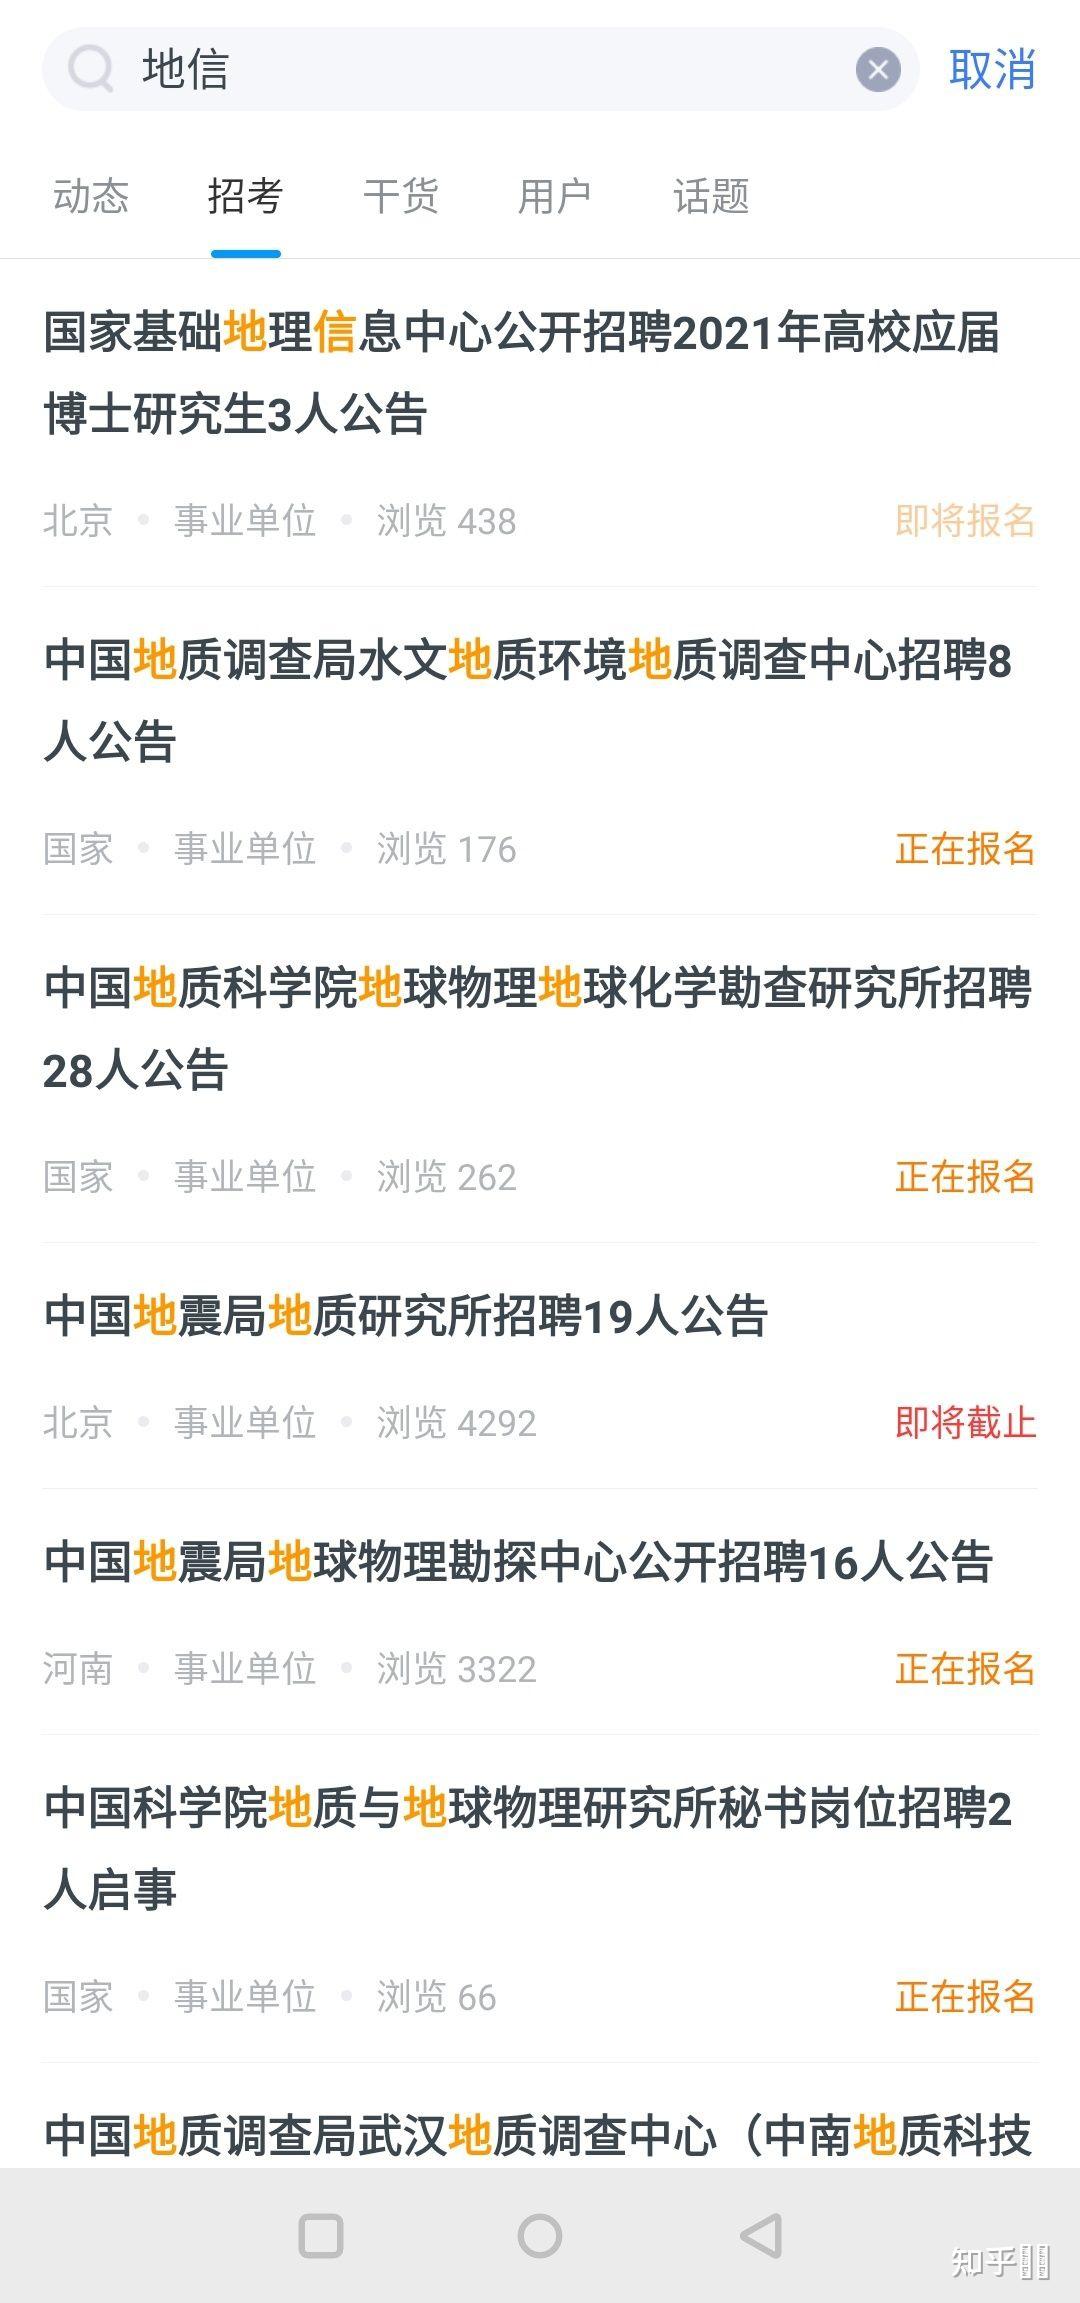 招聘地理信息_2013中国地理信息产业大型招聘会 春季招聘会(2)